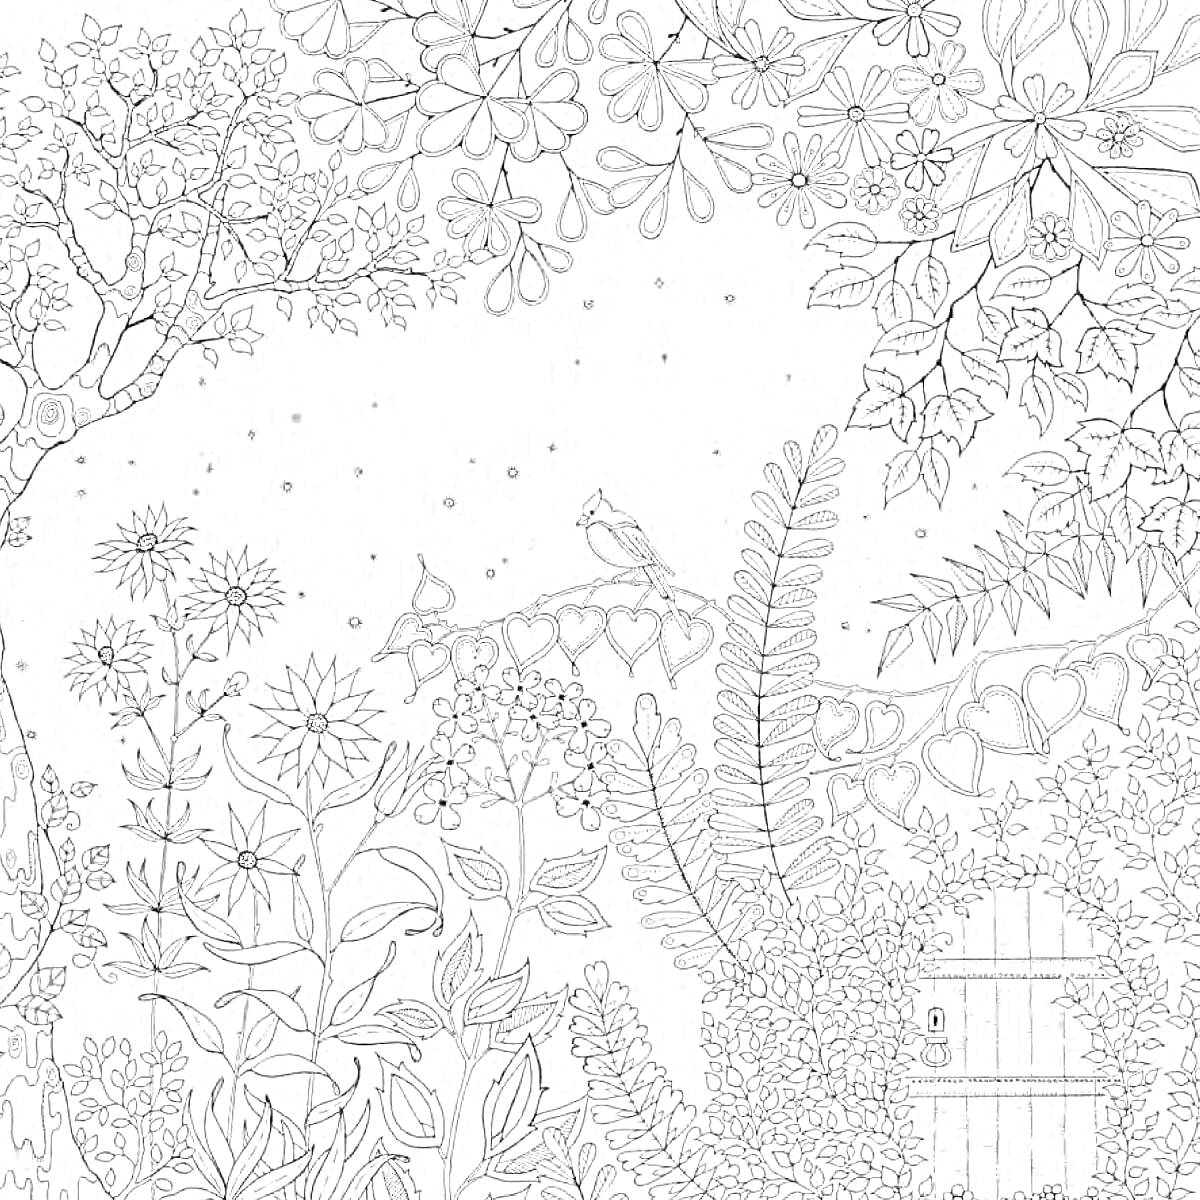 Раскраска Таинственный сад с пышной растительностью, деревьями, цветами, совой, деревенской дверью и высокими кустарниками